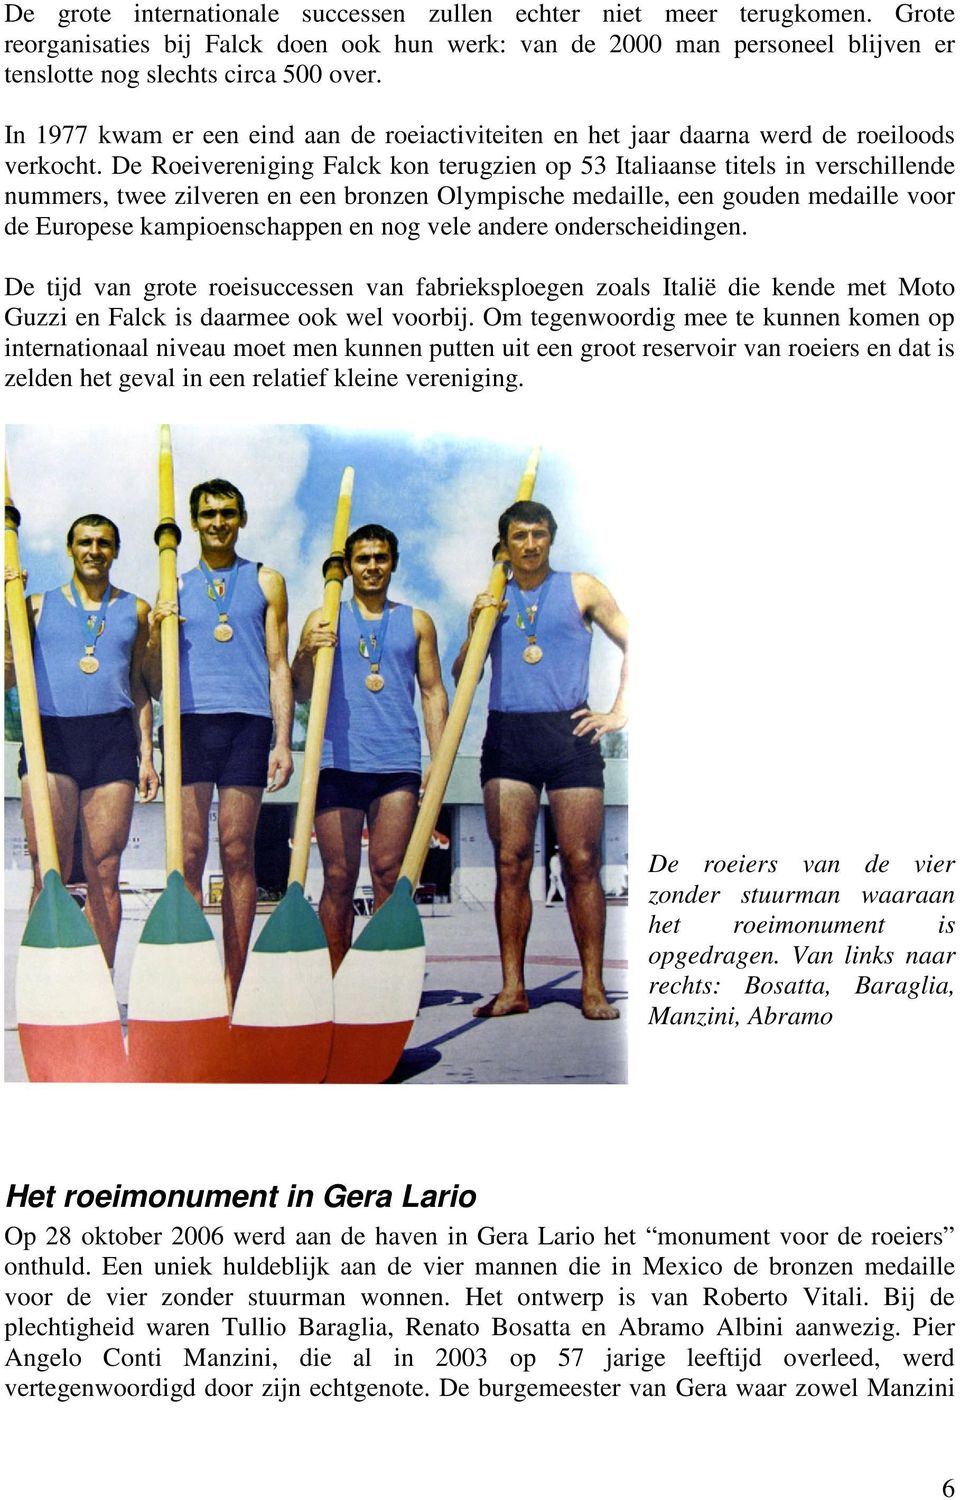 De Roeivereniging Falck kon terugzien op 53 Italiaanse titels in verschillende nummers, twee zilveren en een bronzen Olympische medaille, een gouden medaille voor de Europese kampioenschappen en nog